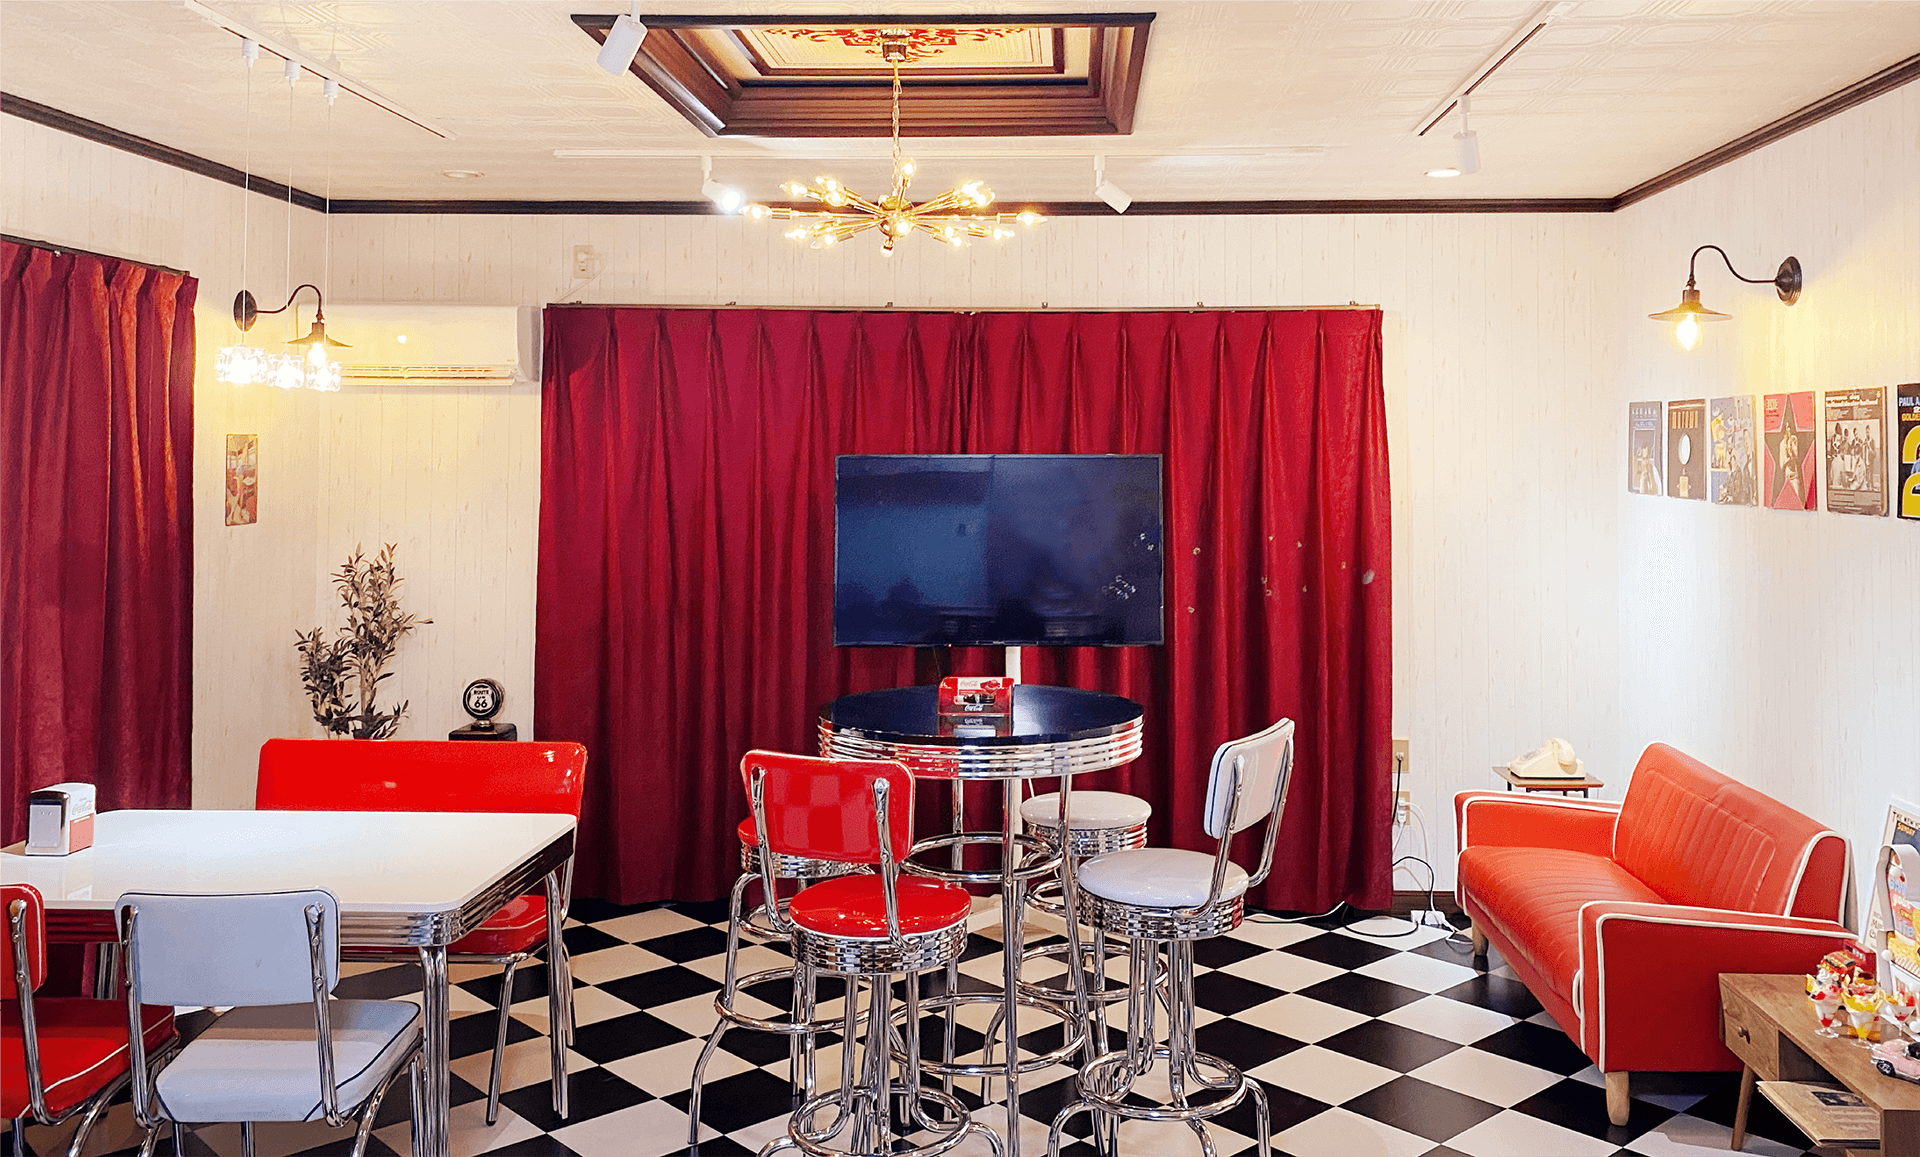 チェック柄の床に無地の赤いカーテン。アメリカンダイナーなチェアやスツール、テーブルがある部屋全体の内観